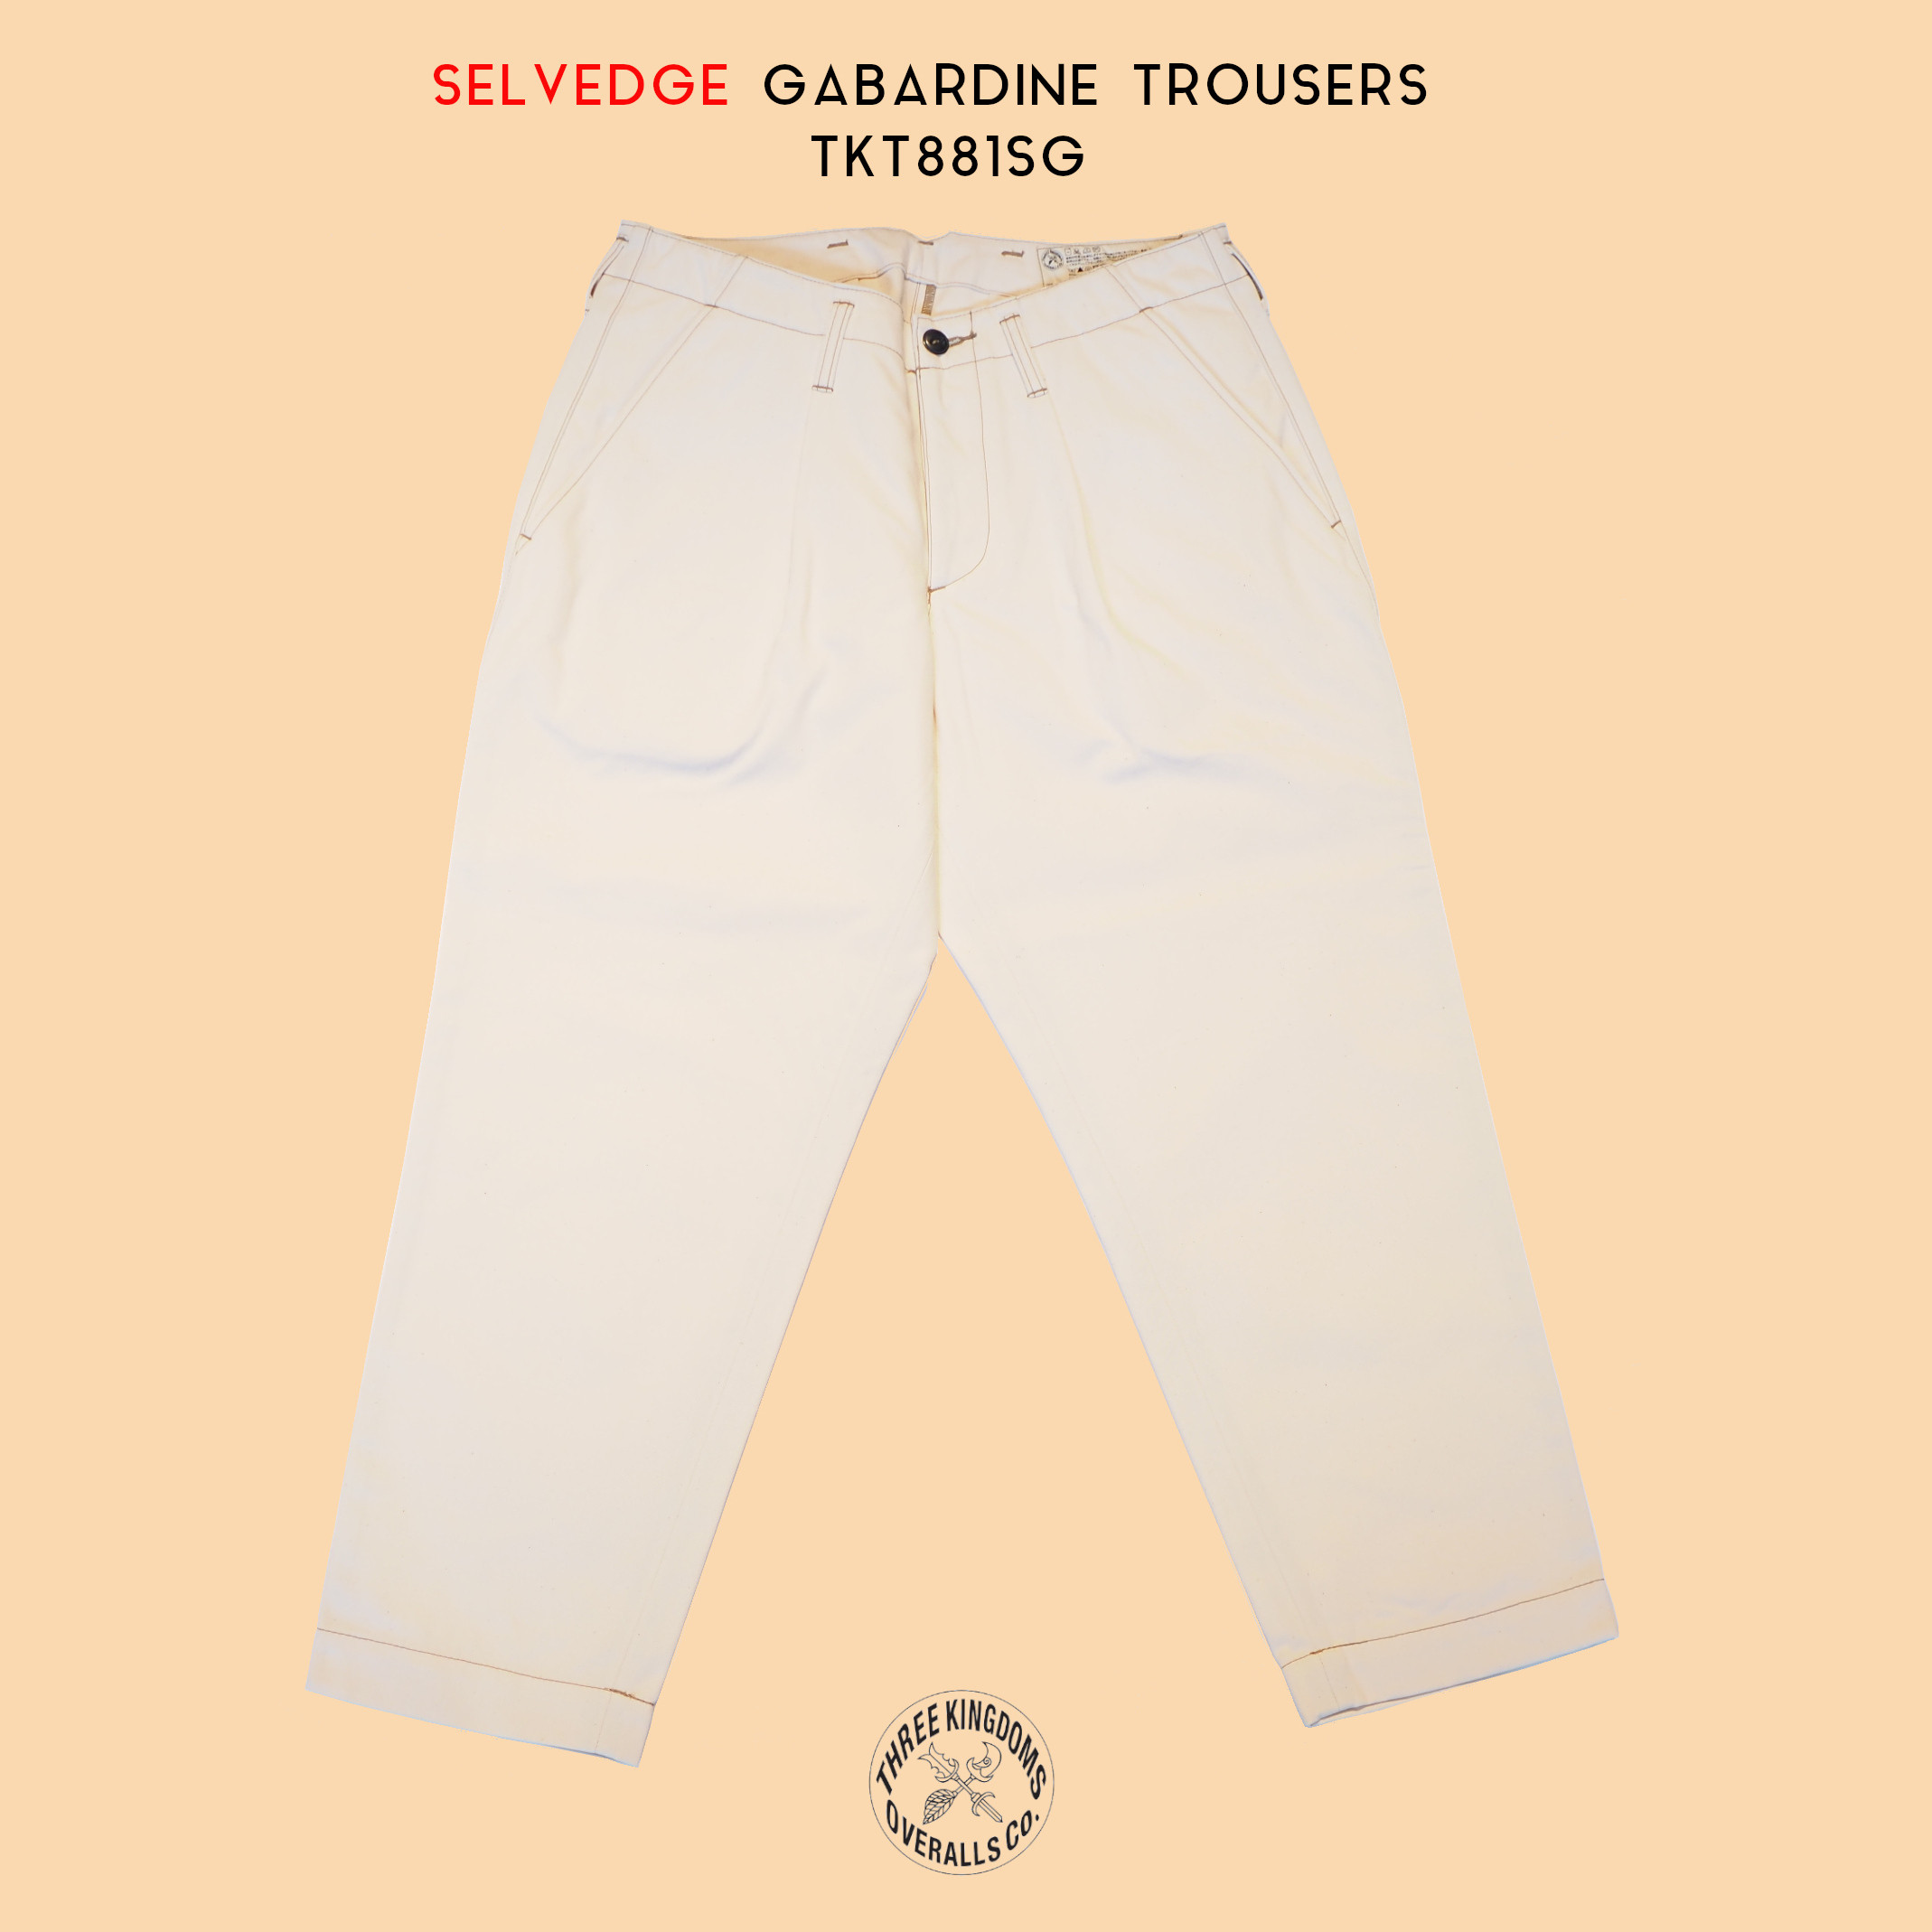 Selvedge Gabardine Trousers TKT881SGは公式オンラインショップにて販売開始📣📣📣👏👏👏。